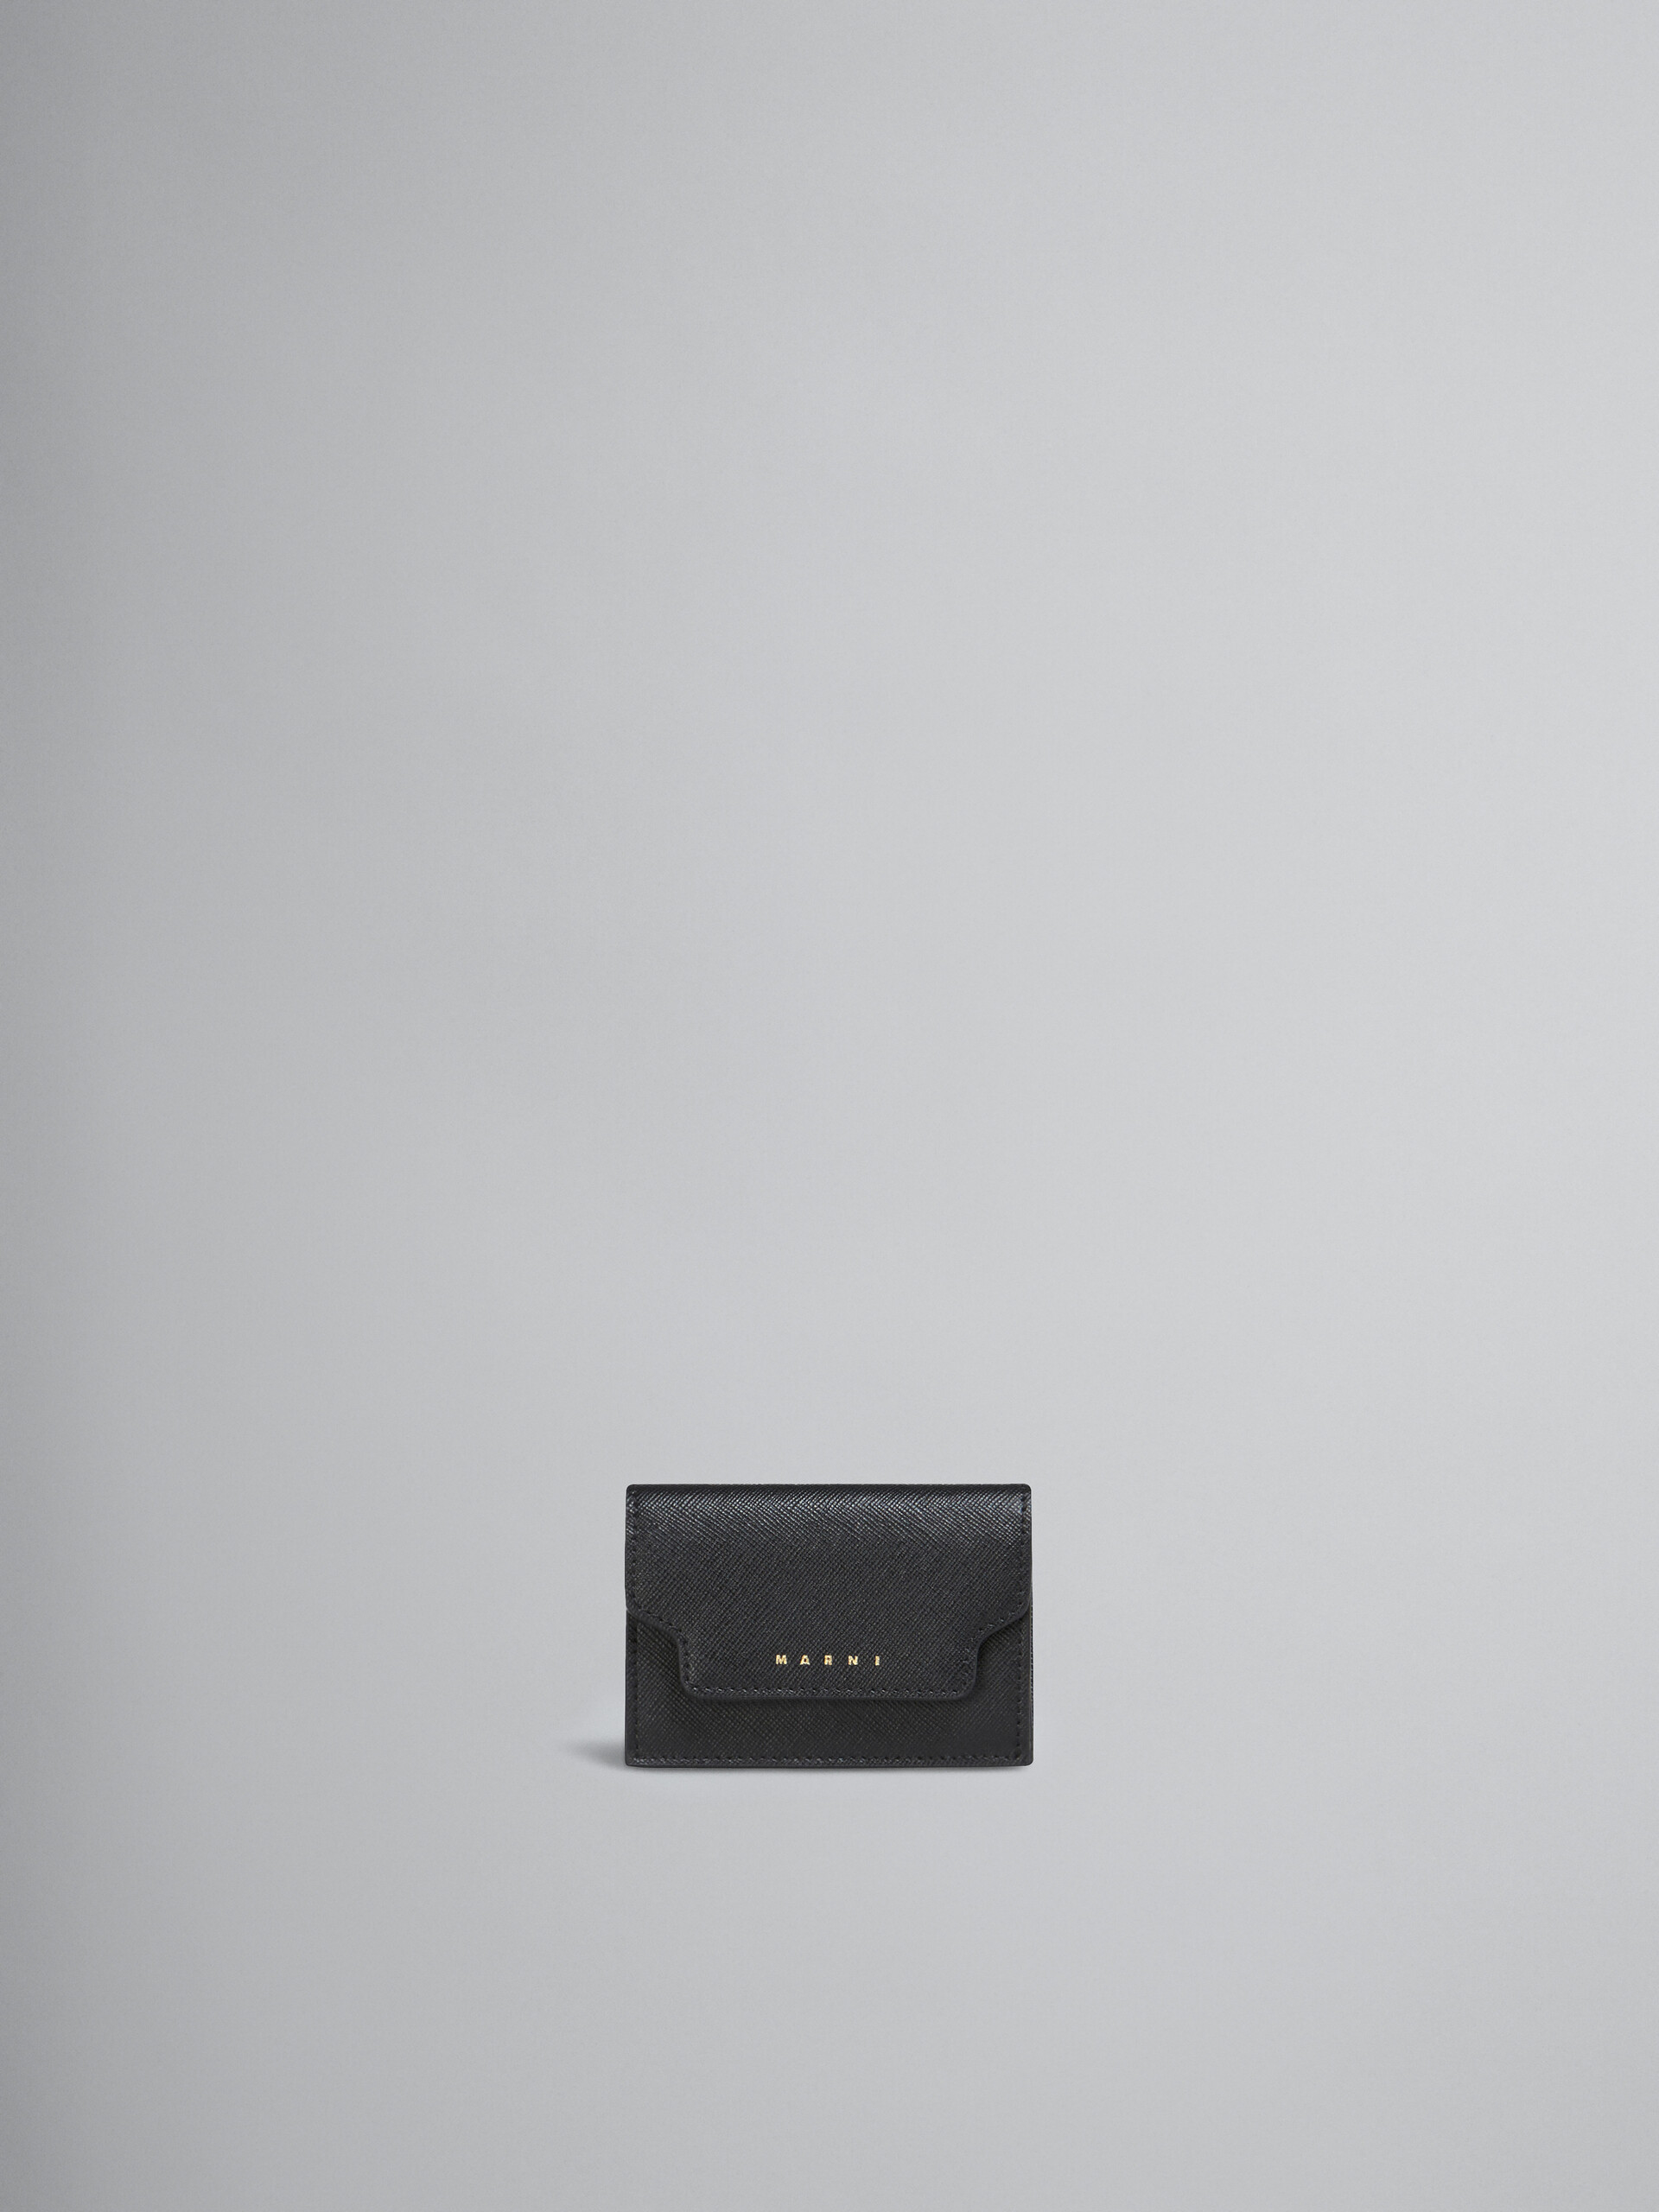 Dreifache Faltbrieftasche aus schwarzem Saffiano-Leder - Brieftaschen - Image 1